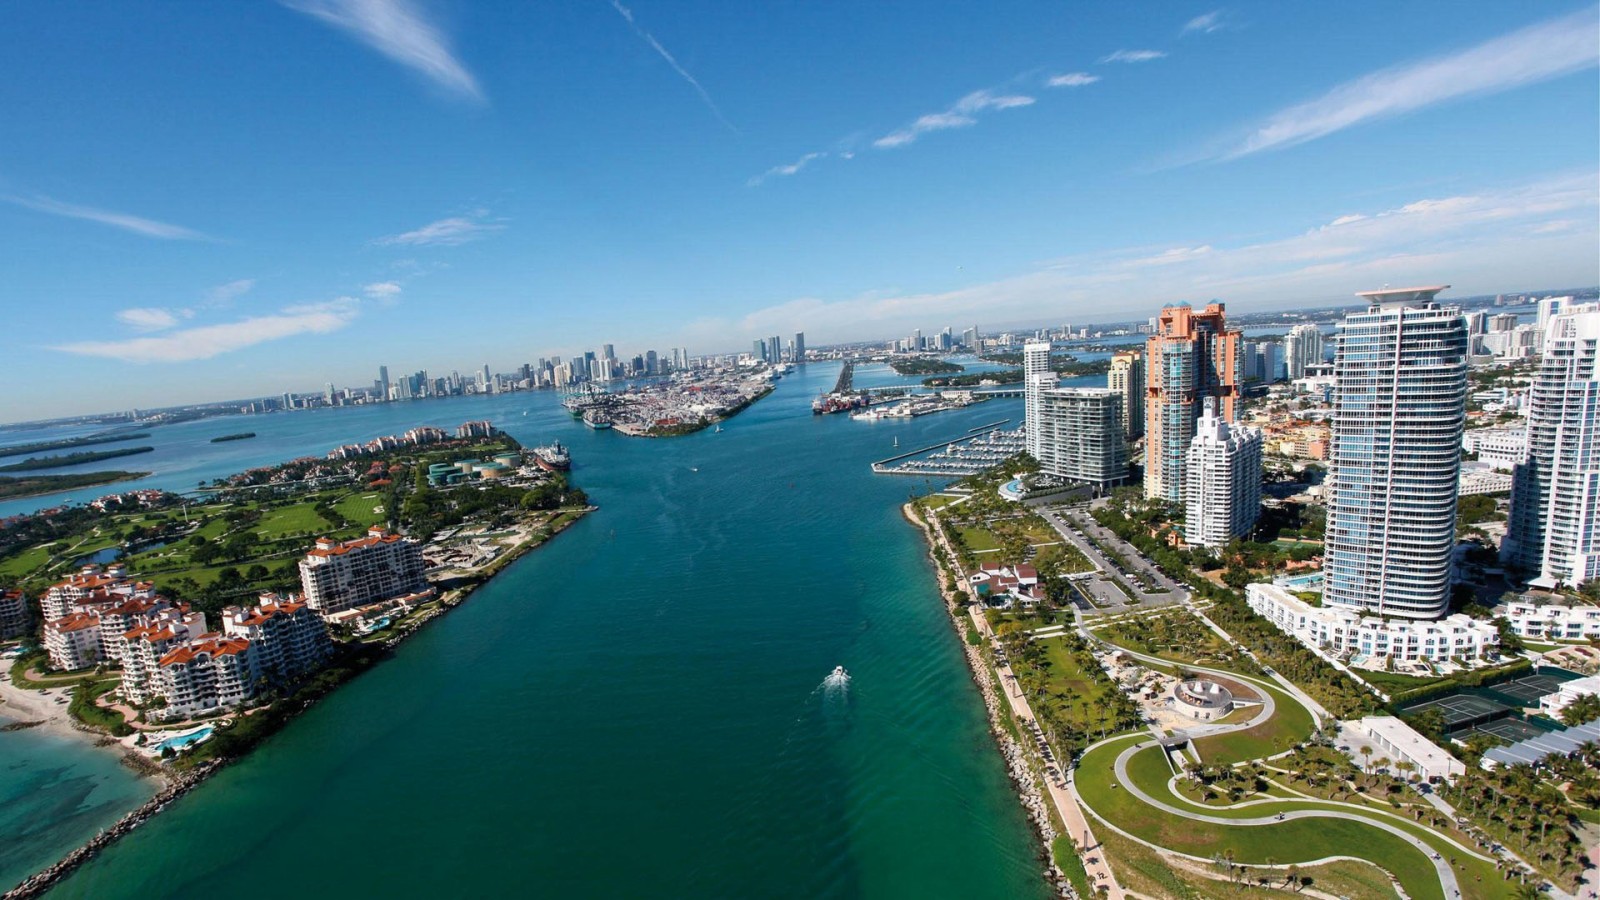 Miami Beach Florida City HD Wallpaper of City   hdwallpaper2013com 1600x900